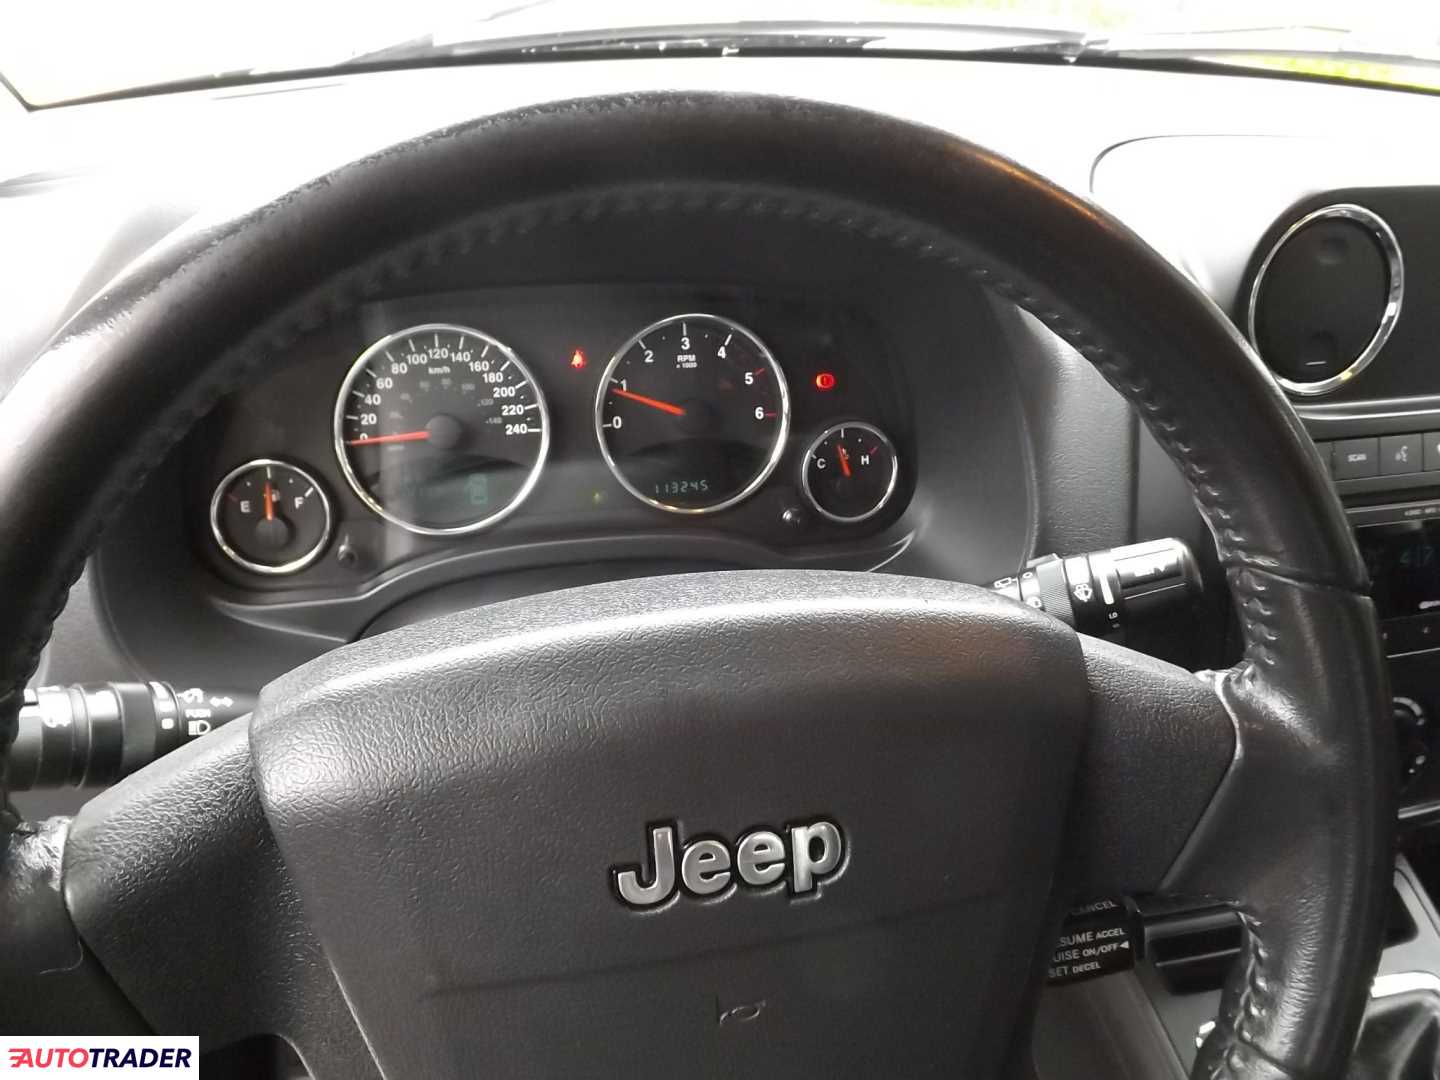 Jeep Compass 2.0 diesel 140 KM 2010r. (Żyrardów